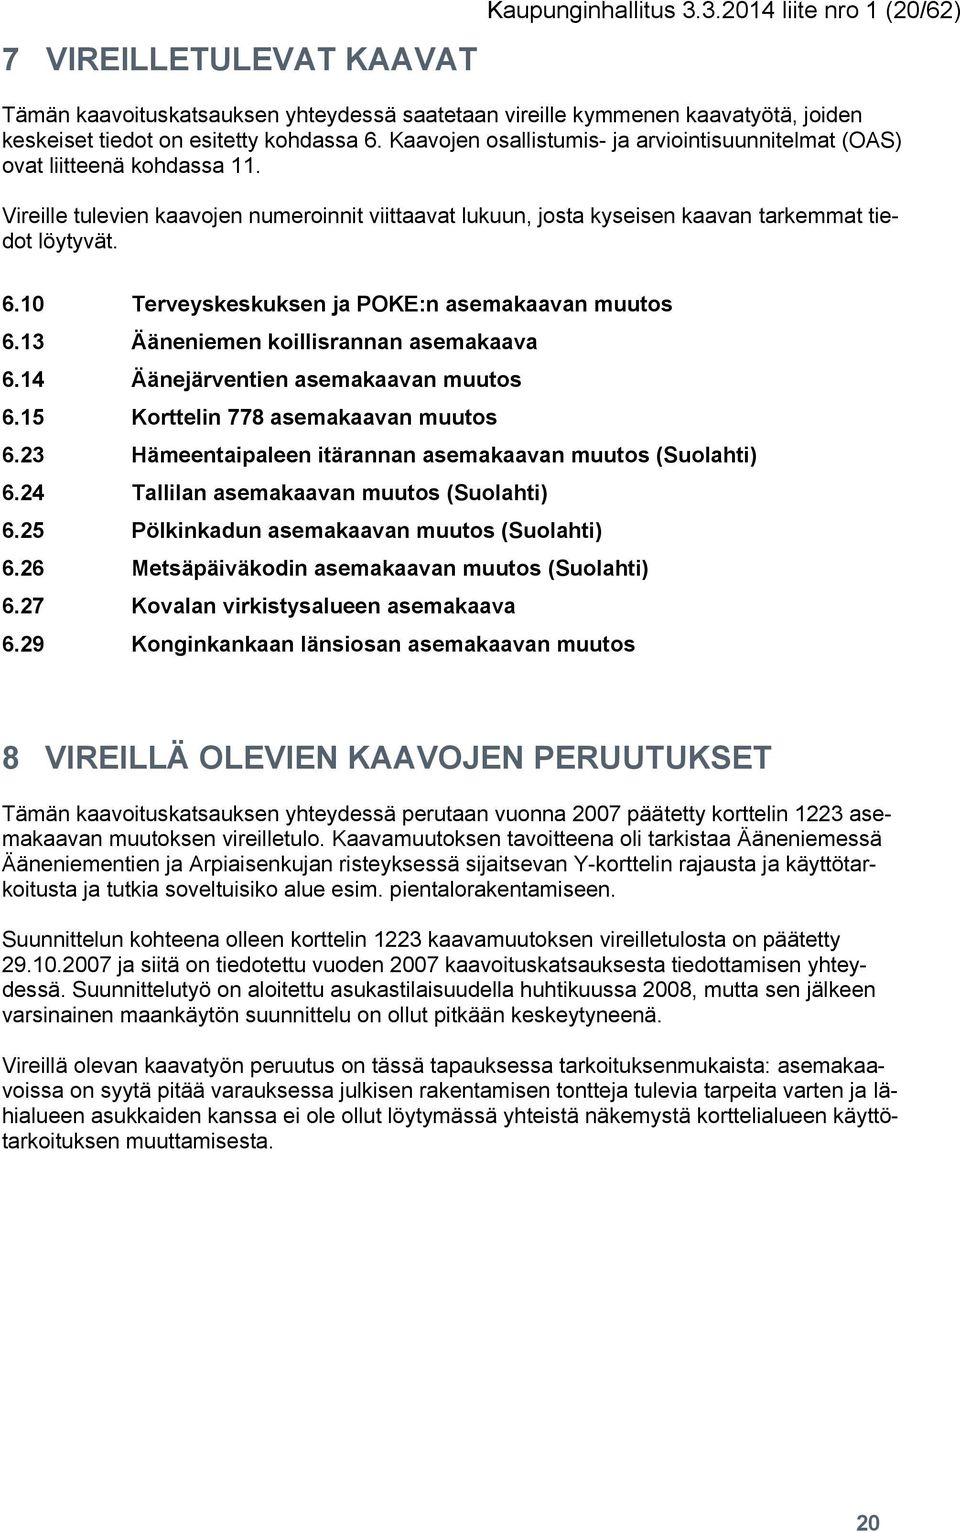 10 Terveyskeskuksen ja POKE:n asemakaavan muutos 6.13 Ääneniemen koillisrannan asemakaava 6.14 Äänejärventien asemakaavan muutos 6.15 Korttelin 778 asemakaavan muutos 6.